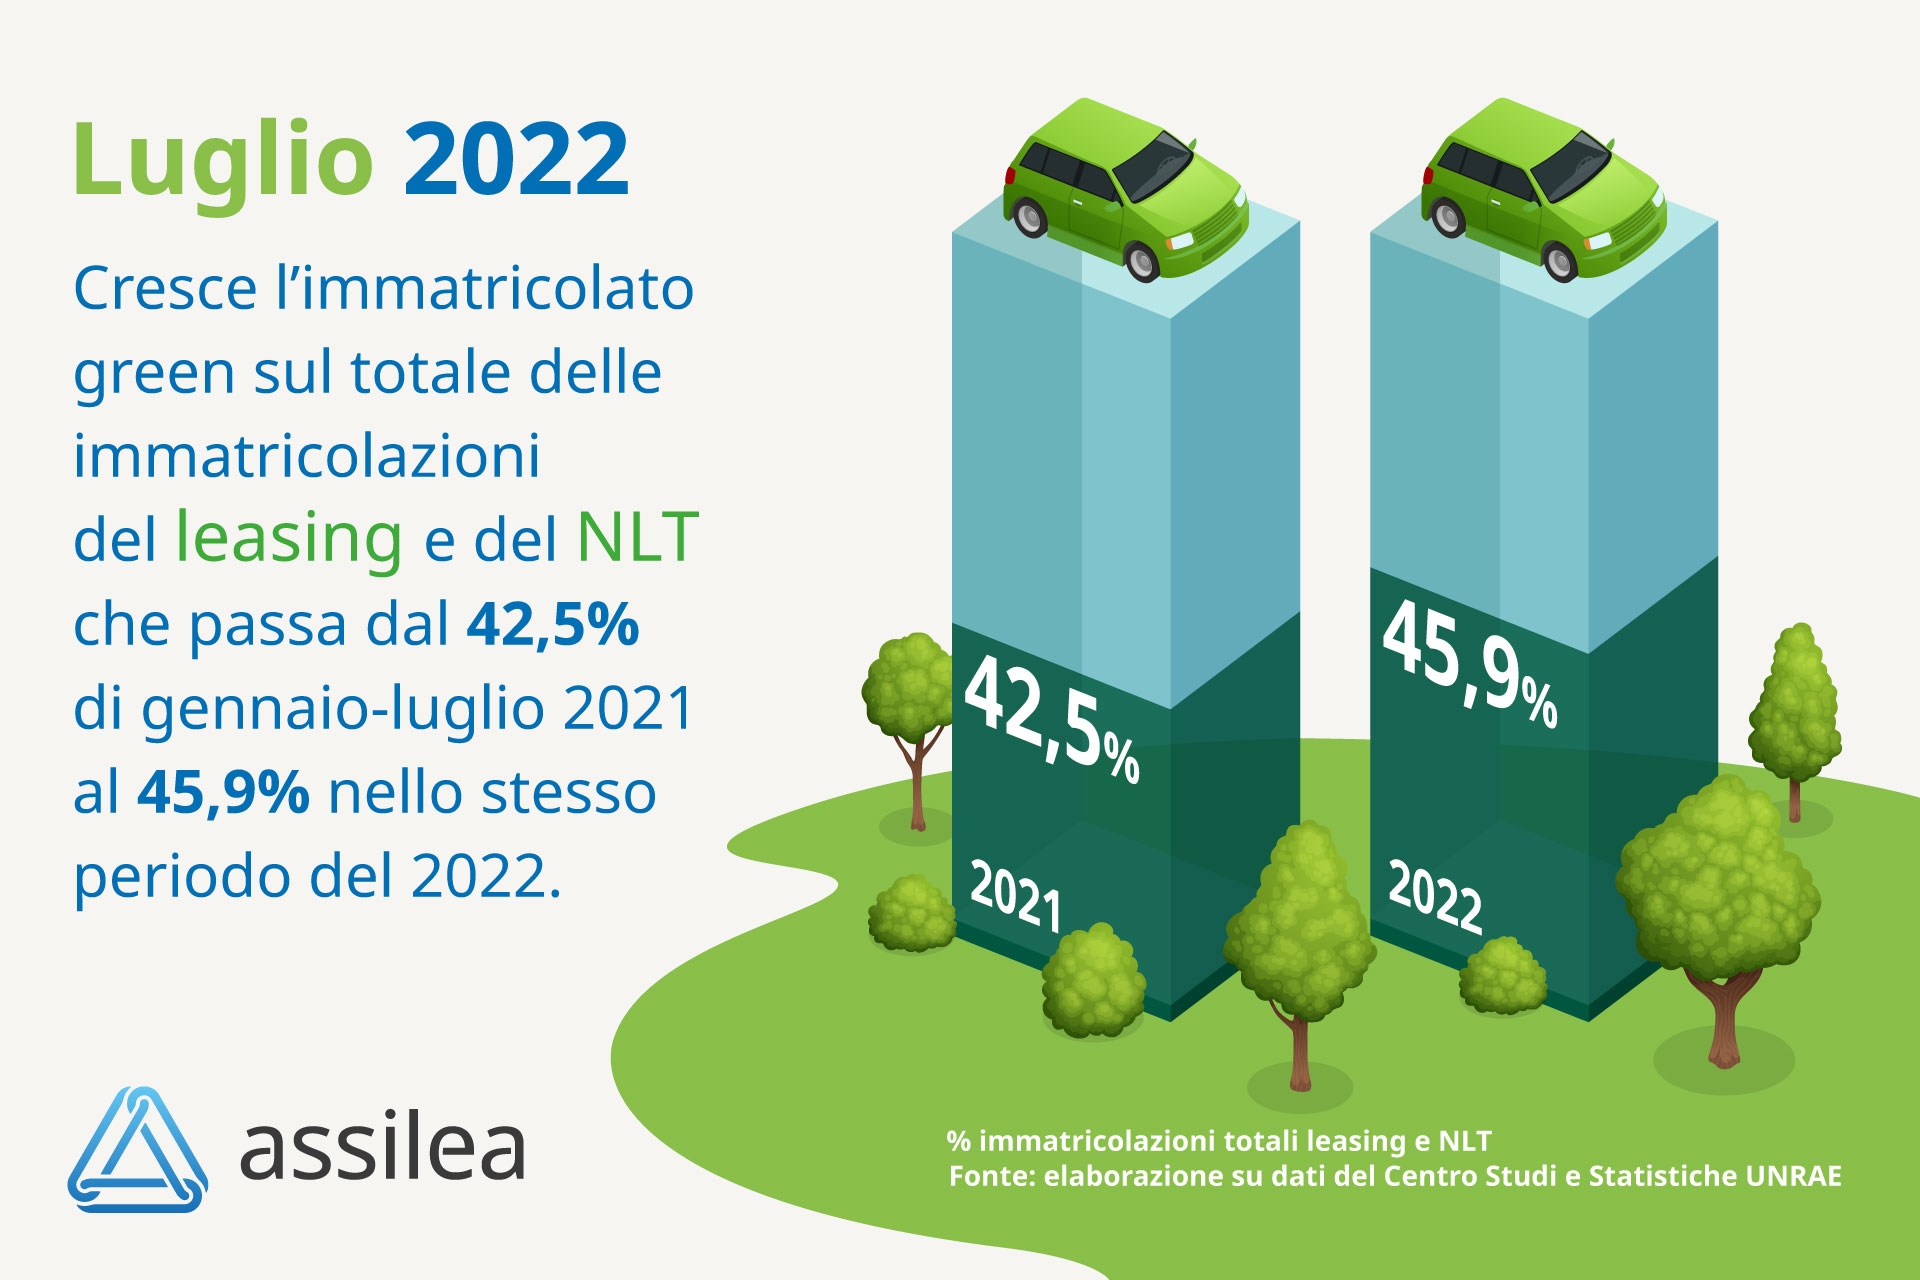 Assilea, immatricolato auto: mese Luglio 2022 leasing +4,6%